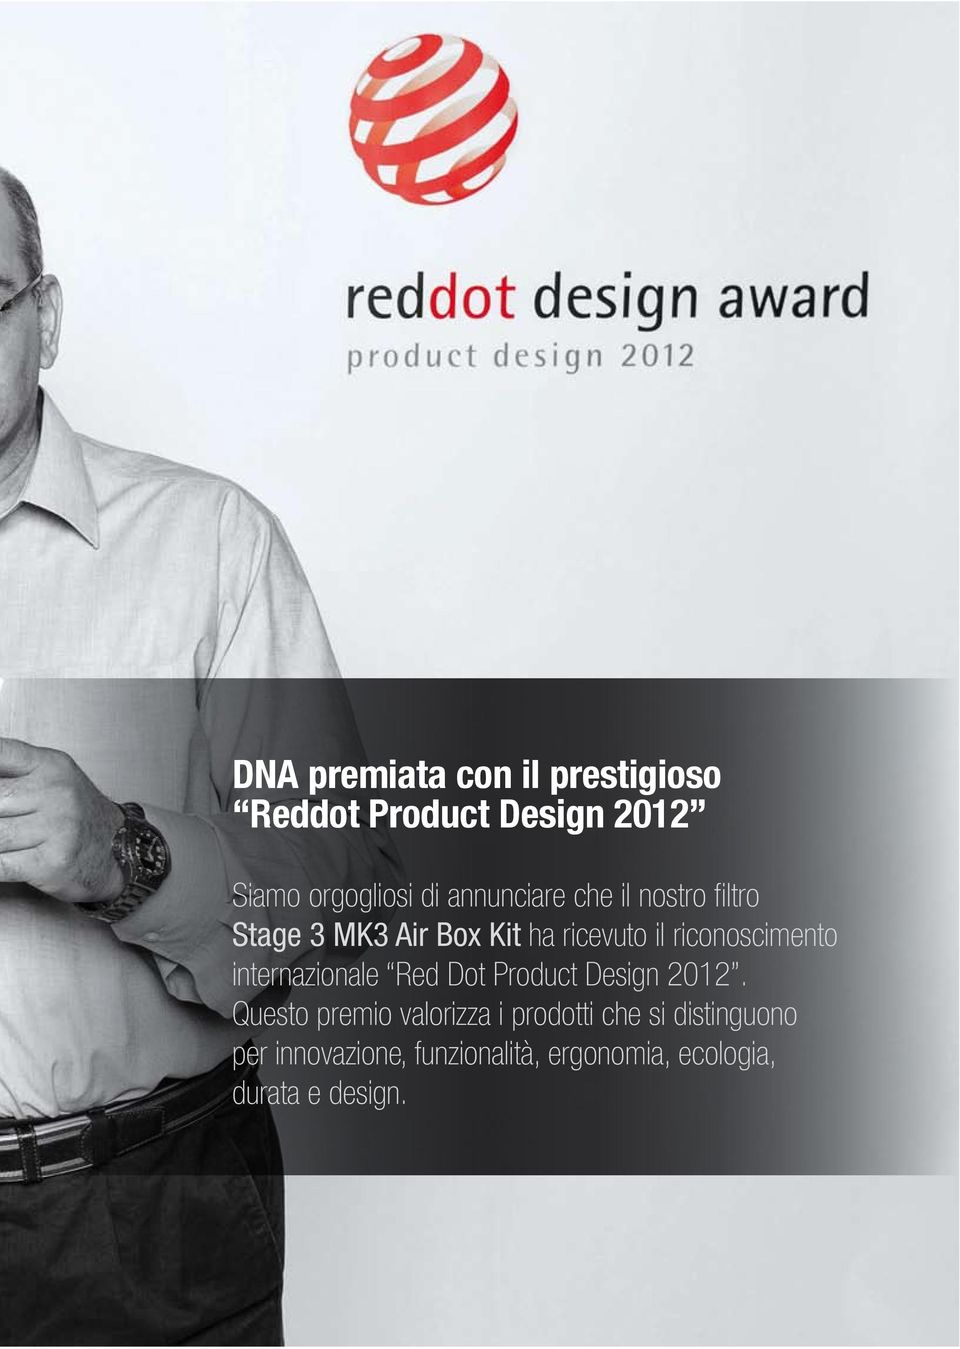 riconoscimento internazionale Red Dot Product Design 2012.